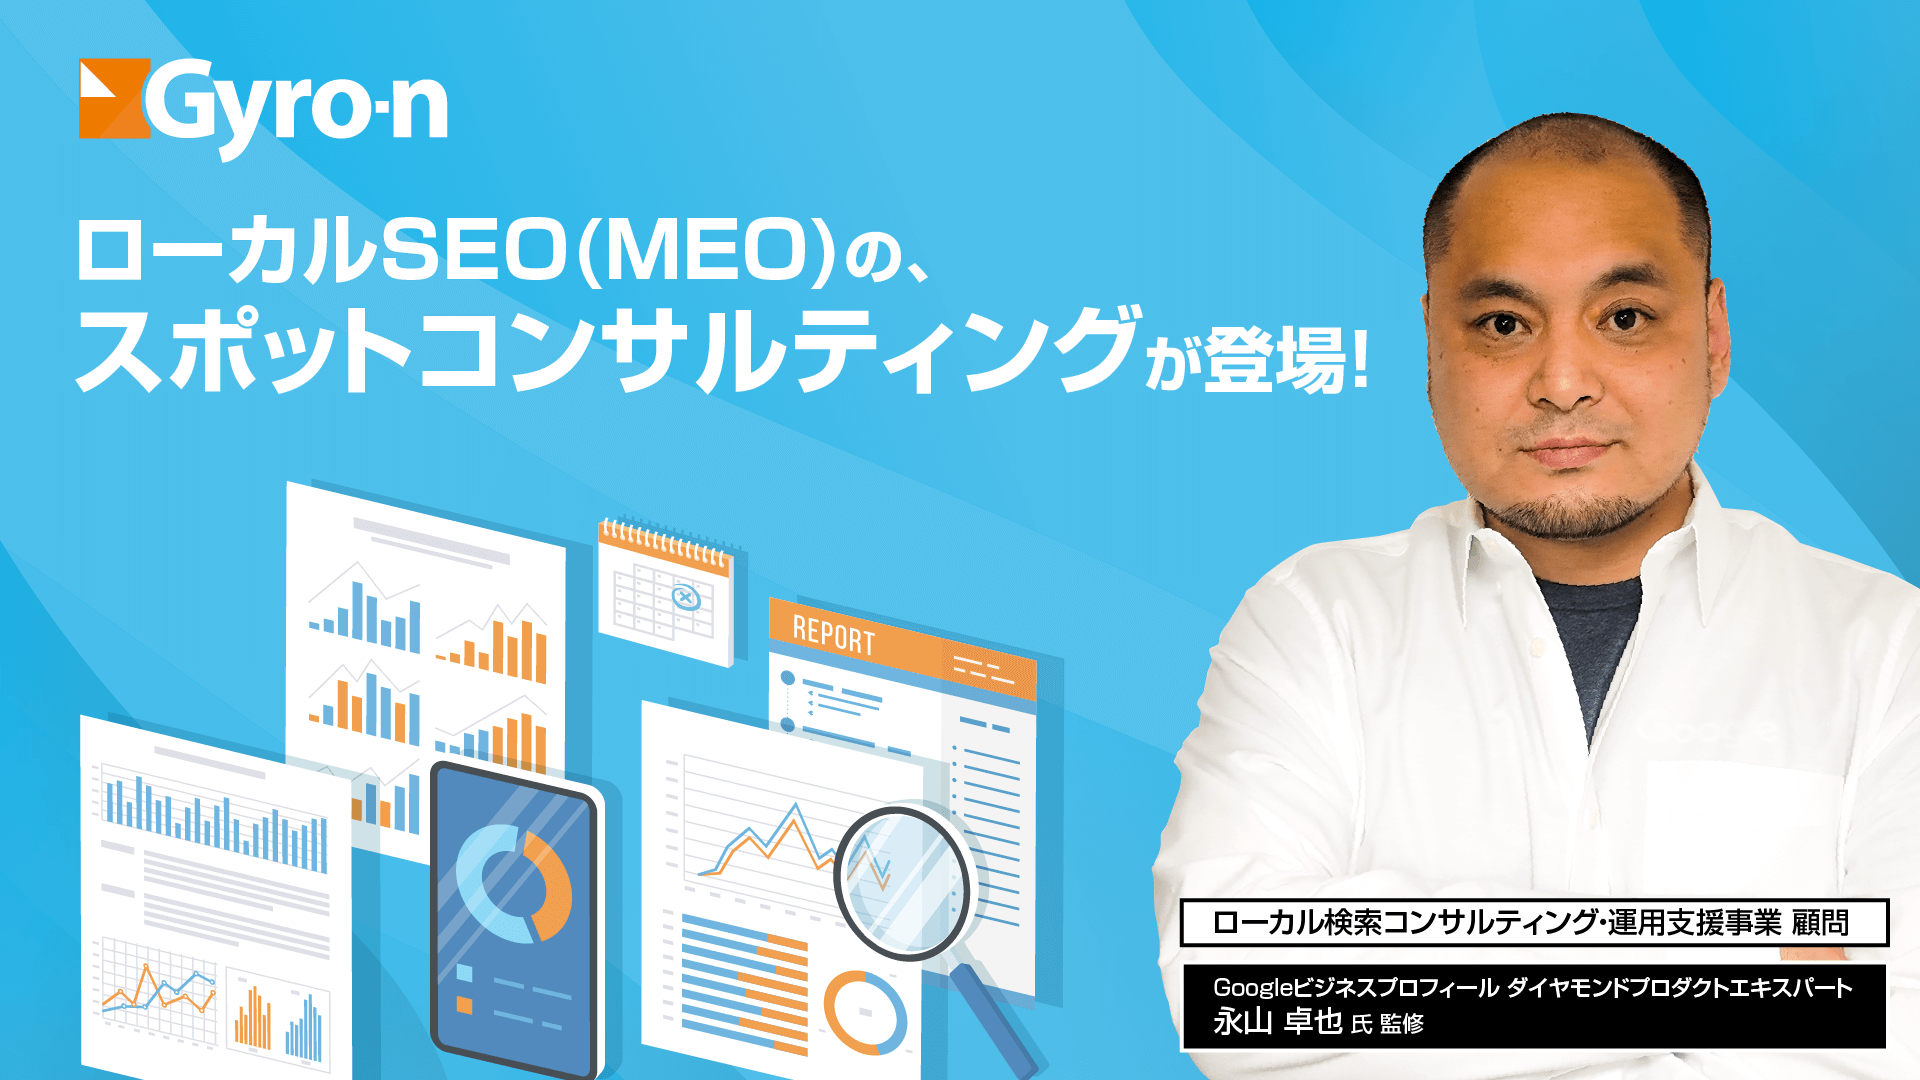 MEO順位チェック&Googleマイビジネス一元管理ツール